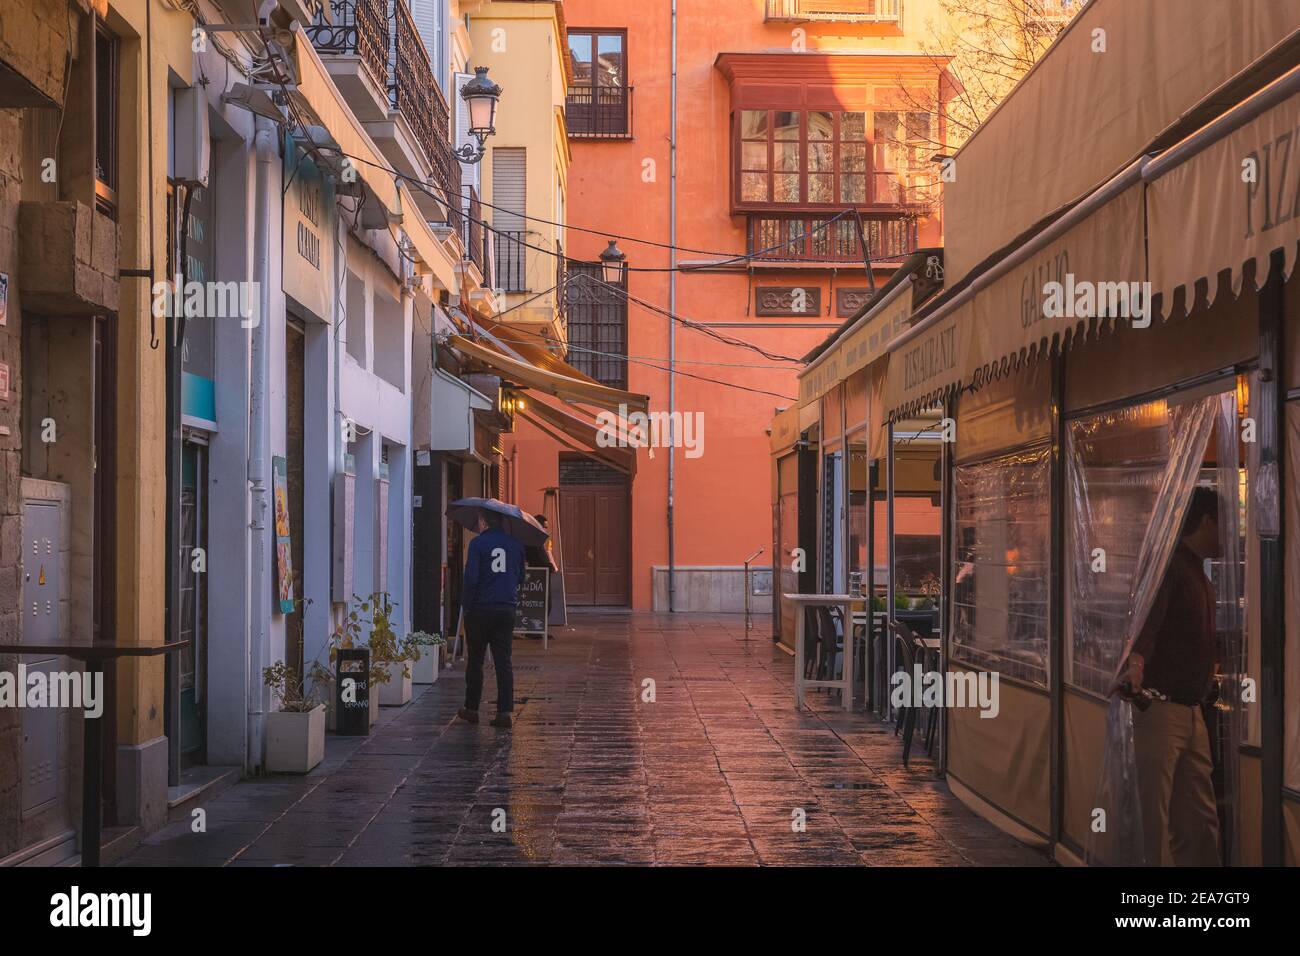 Granada, Spain - March 30 2018: Sun and rain at Plaza Bibarrambla in the colourful old town of Granada, Andalusia, Spain. Stock Photo